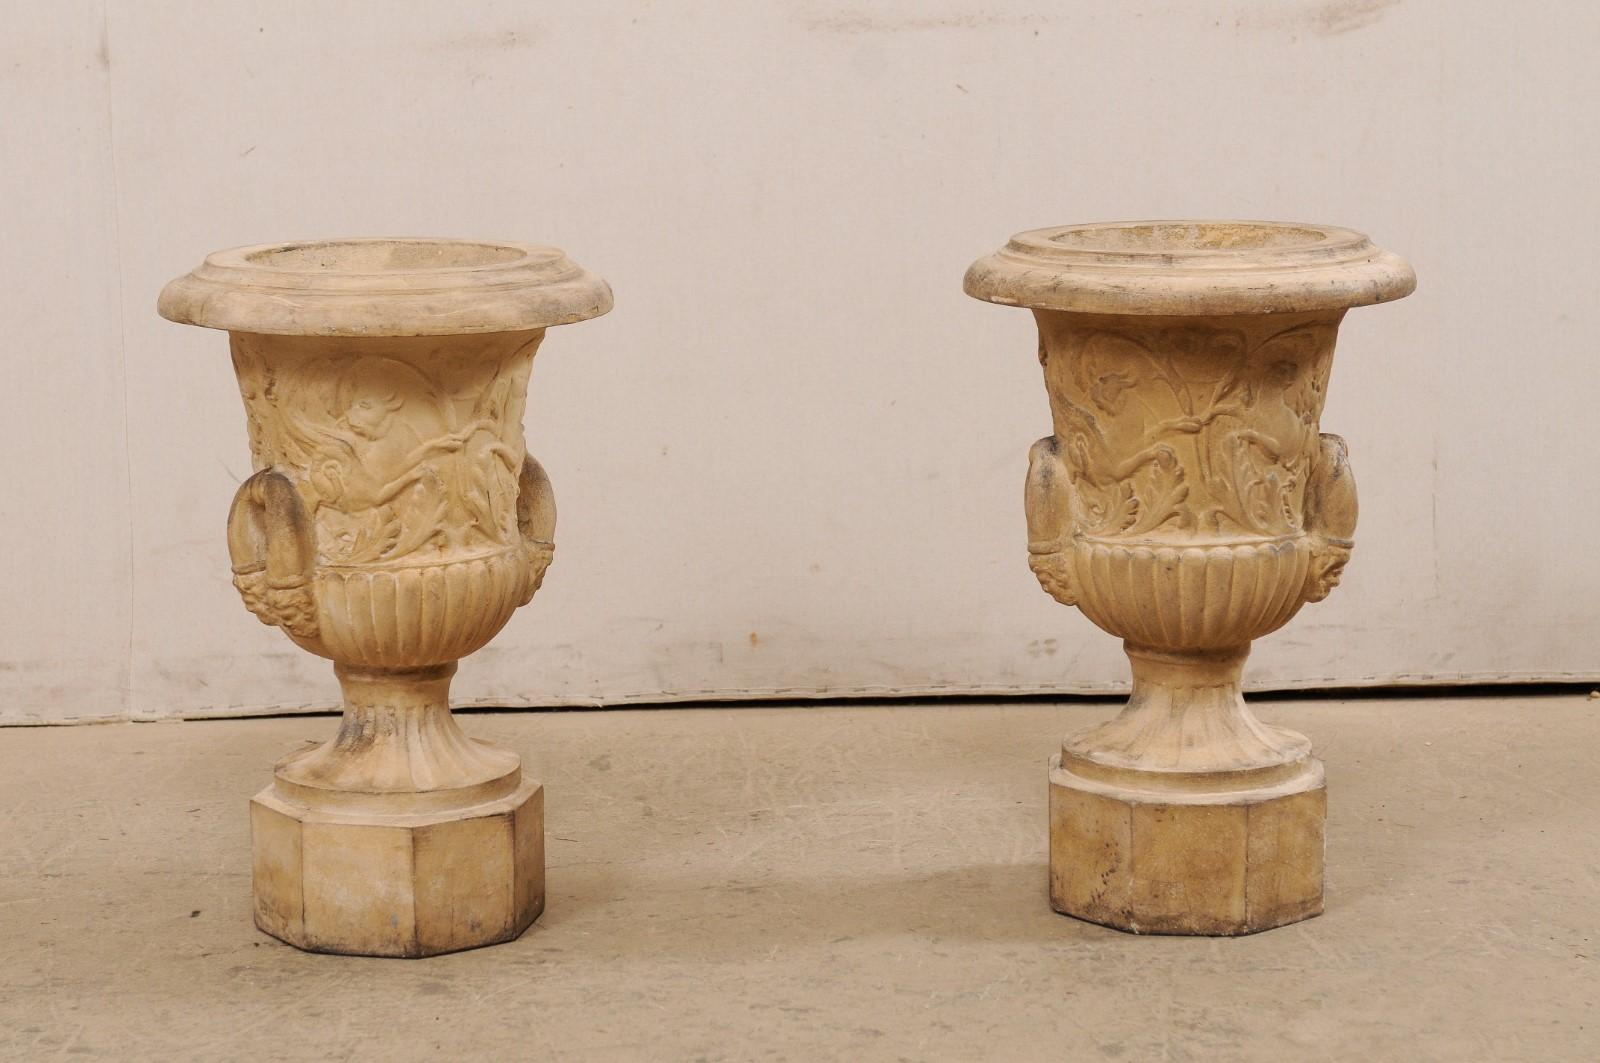 Une paire d'urnes anglaises en terre cuite du début du 20e siècle. Cette paire d'urnes anciennes en terre cuite provenant d'Angleterre est ornée d'un motif de griffons ailés et d'un motif de feuillage, avec des éléments anglés. Une solide poignée